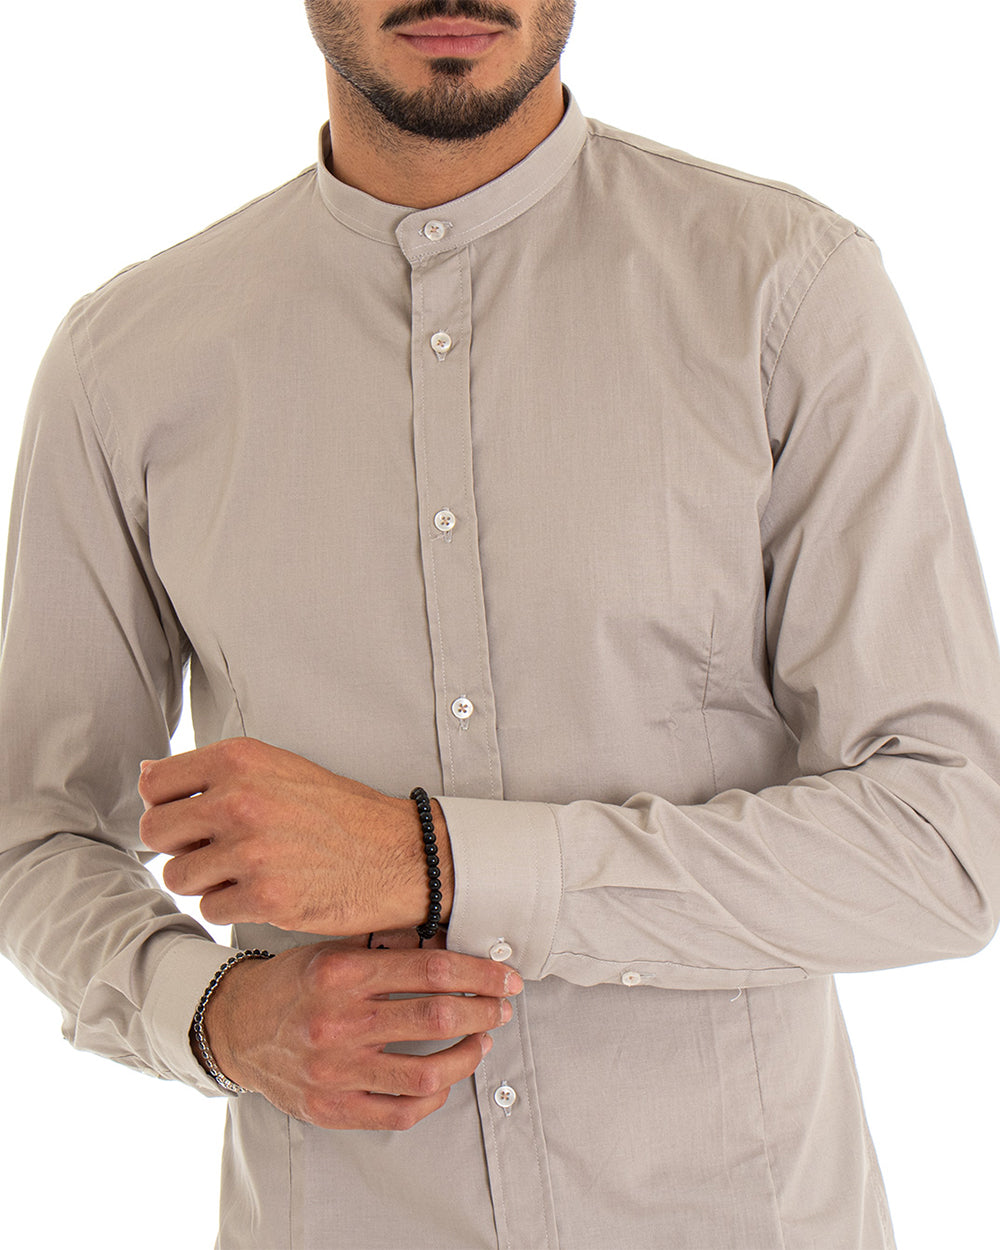 Camicia Uomo Collo Coreano Manica Lunga Tinta Unita Slim Fit Basic Beige GIOSAL-C2095A